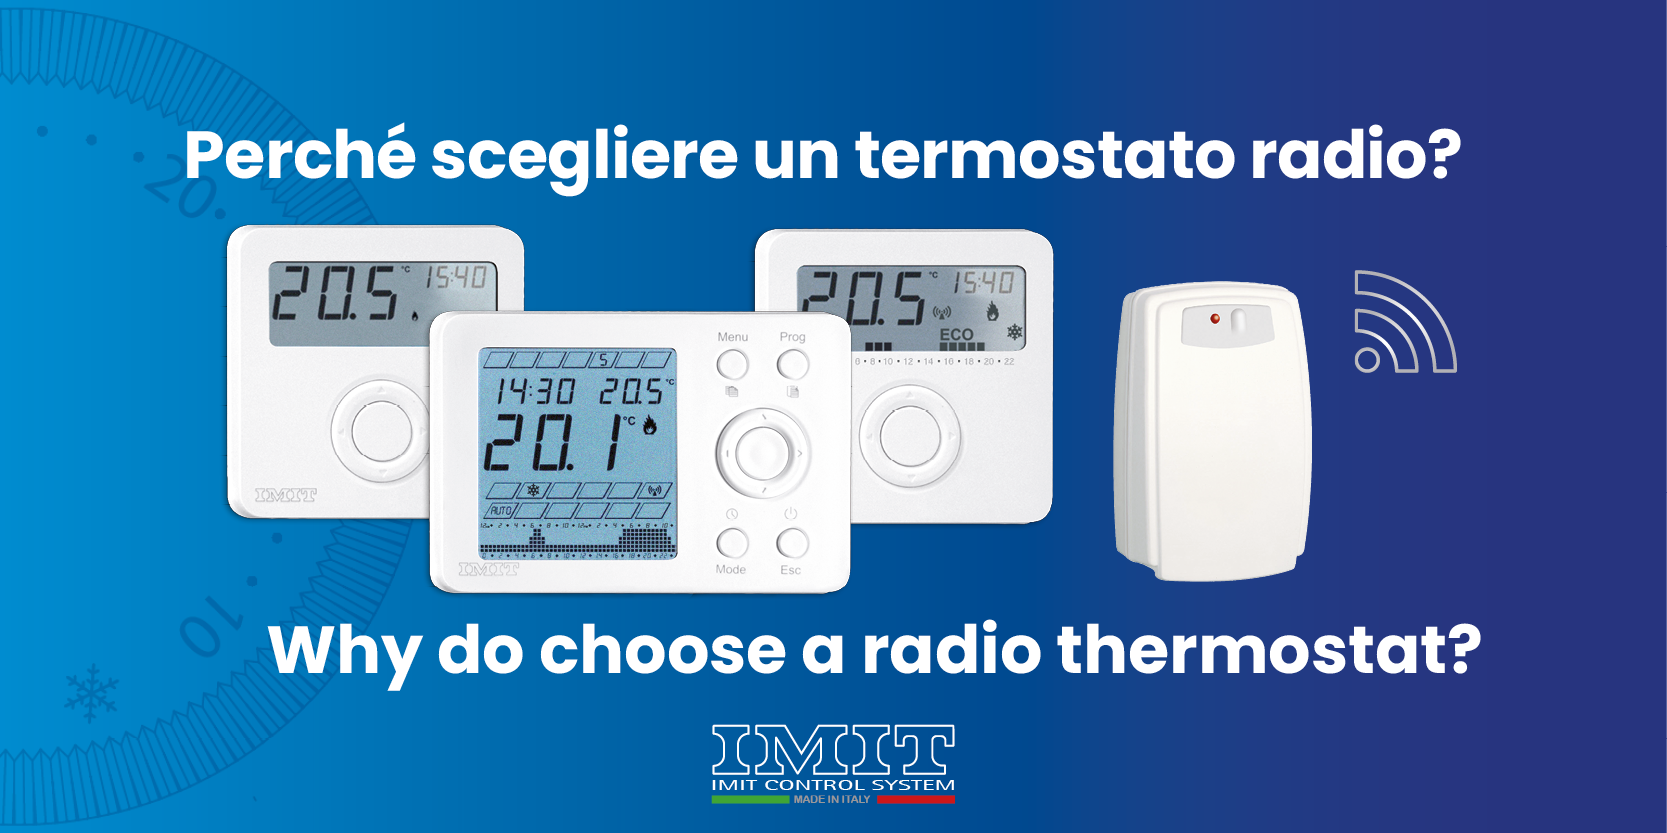 Perché scegliere un termostato radio? - IMIT Blog - condividiamo 100 anni  di esperienza